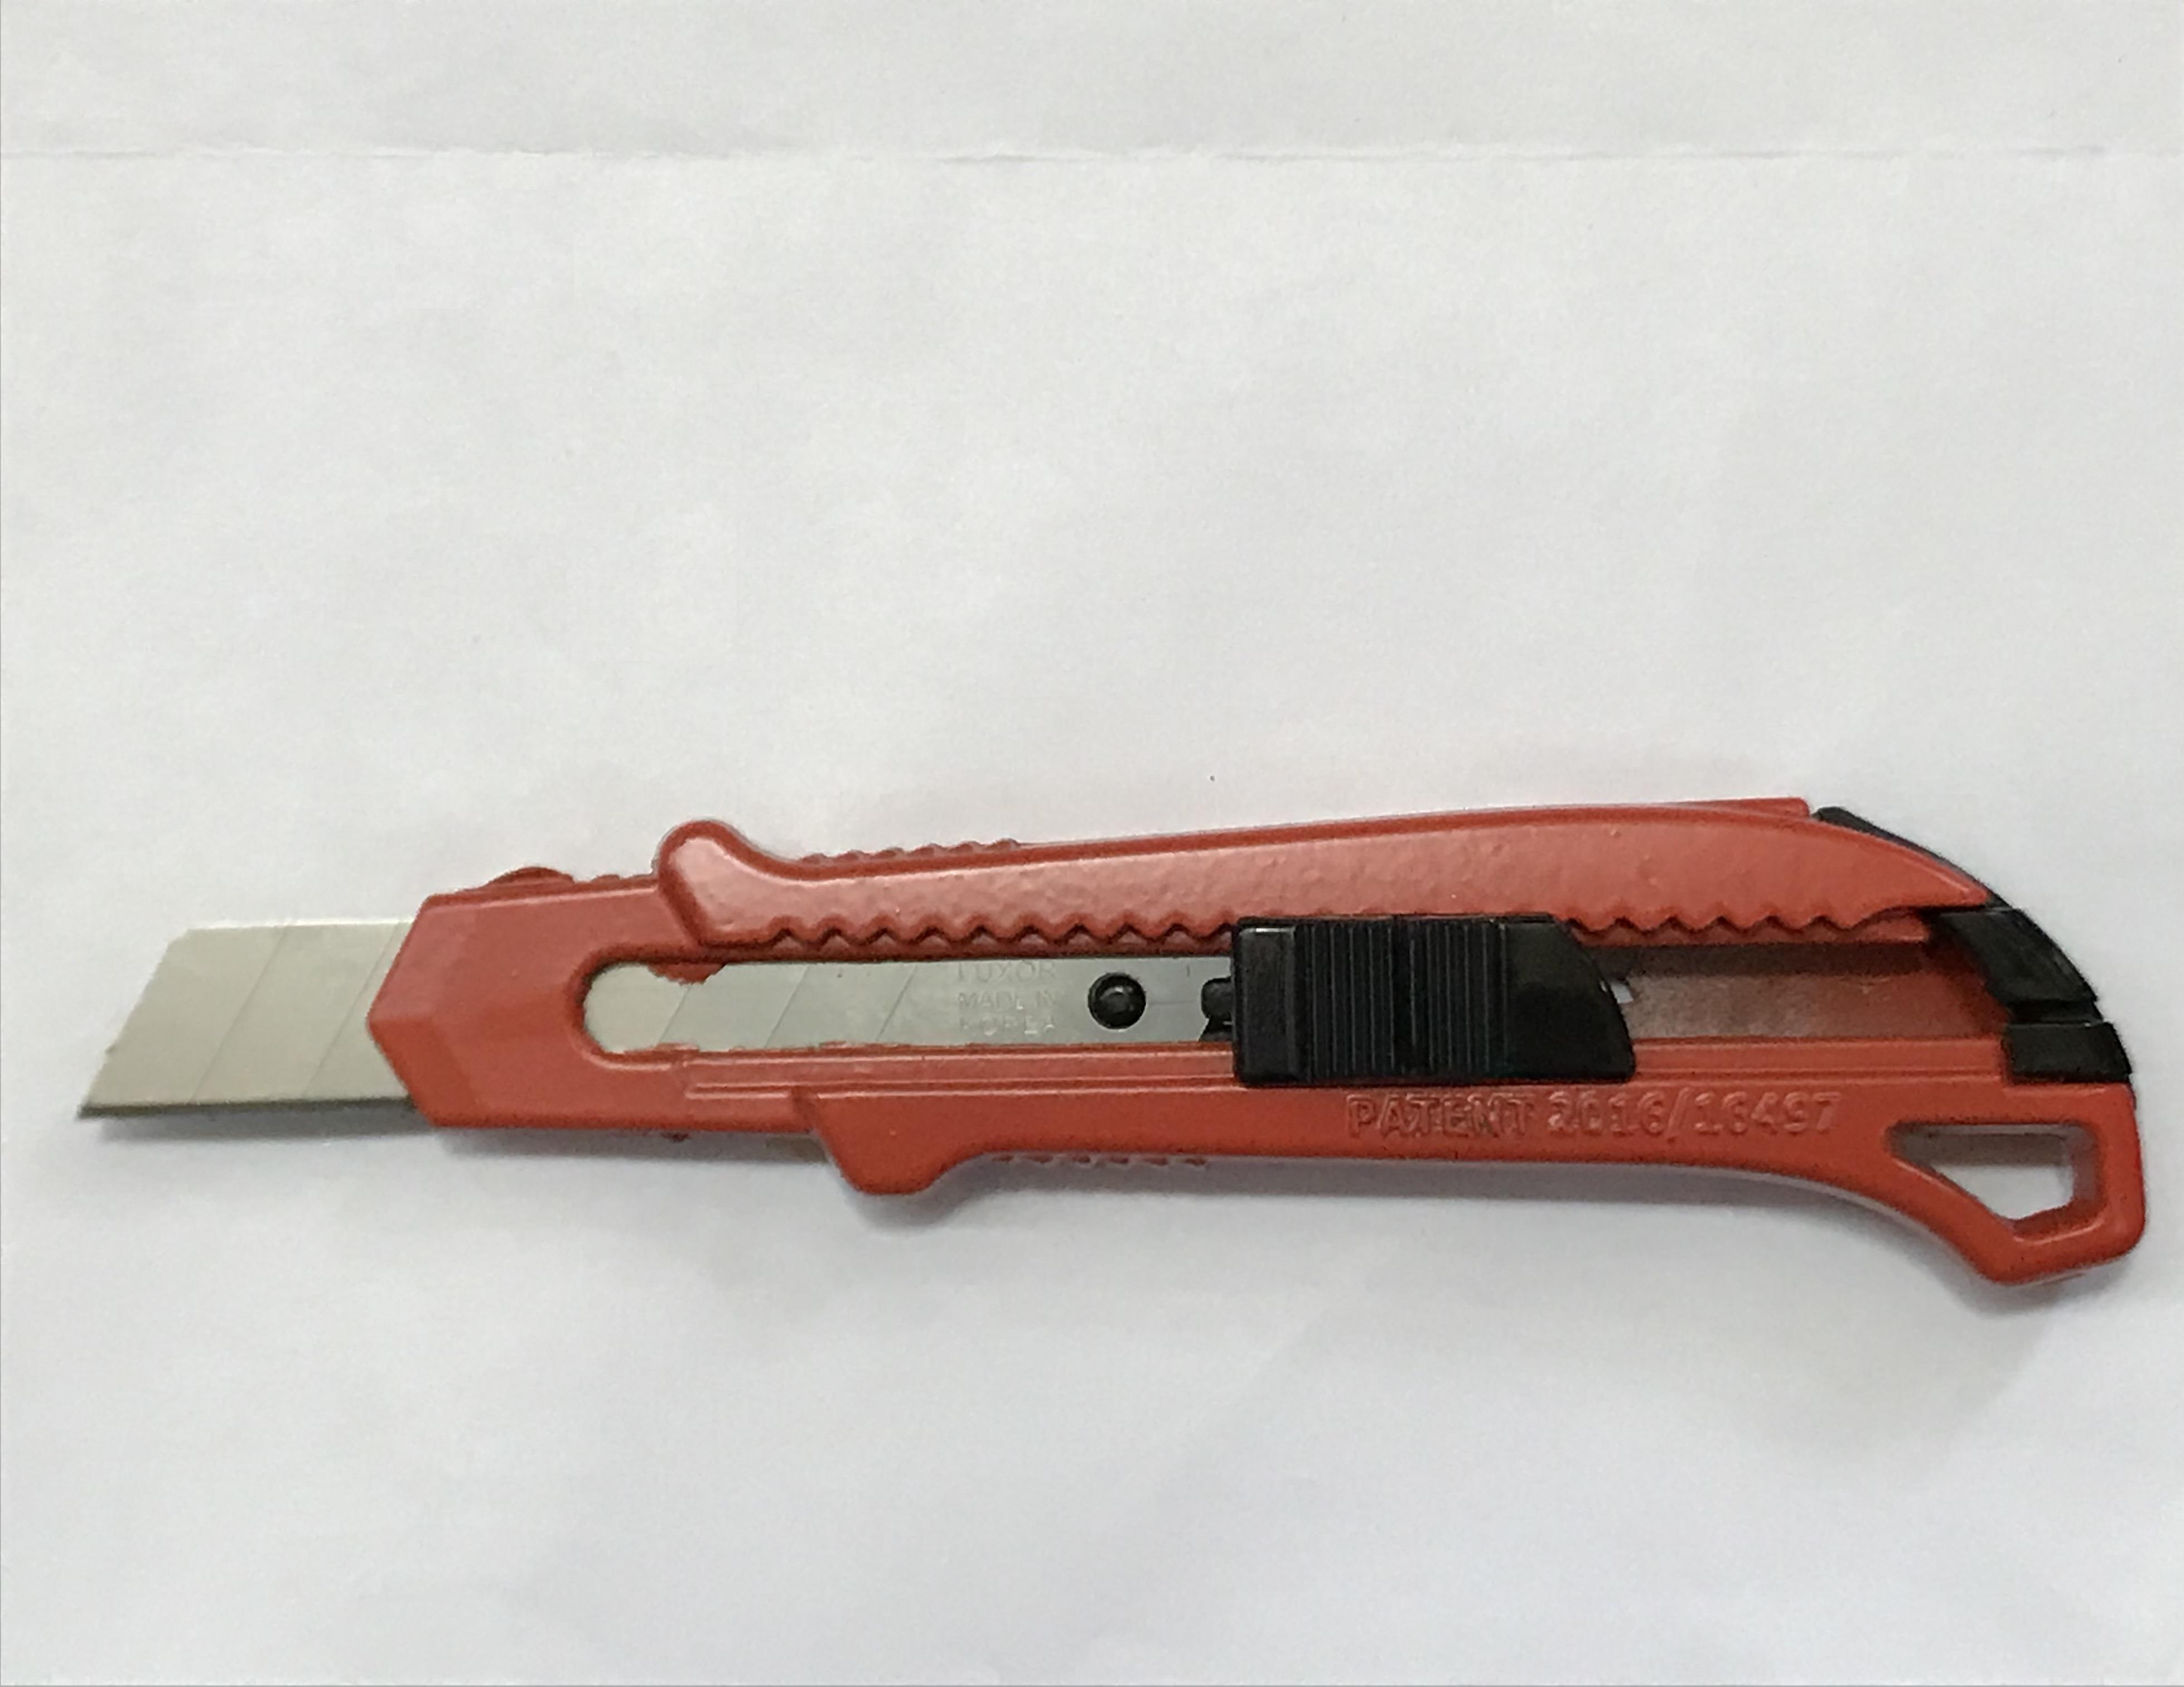 Krl Metal Maket Bıçağı Falçata 18mm 0,5mm